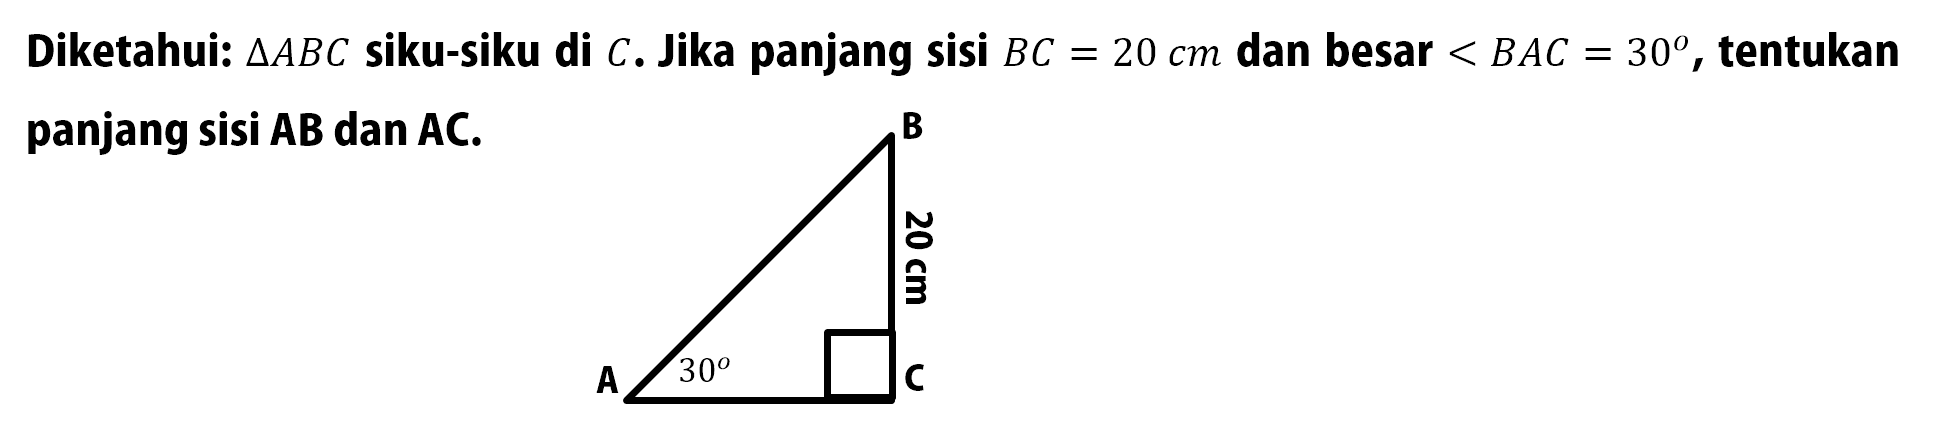 Diketahui: segitiga ABC siku-siku di C. Jika panjang sisi BC=20 cm dan besar sudut BAC=30, tentukan panjang sisi AB dan AC